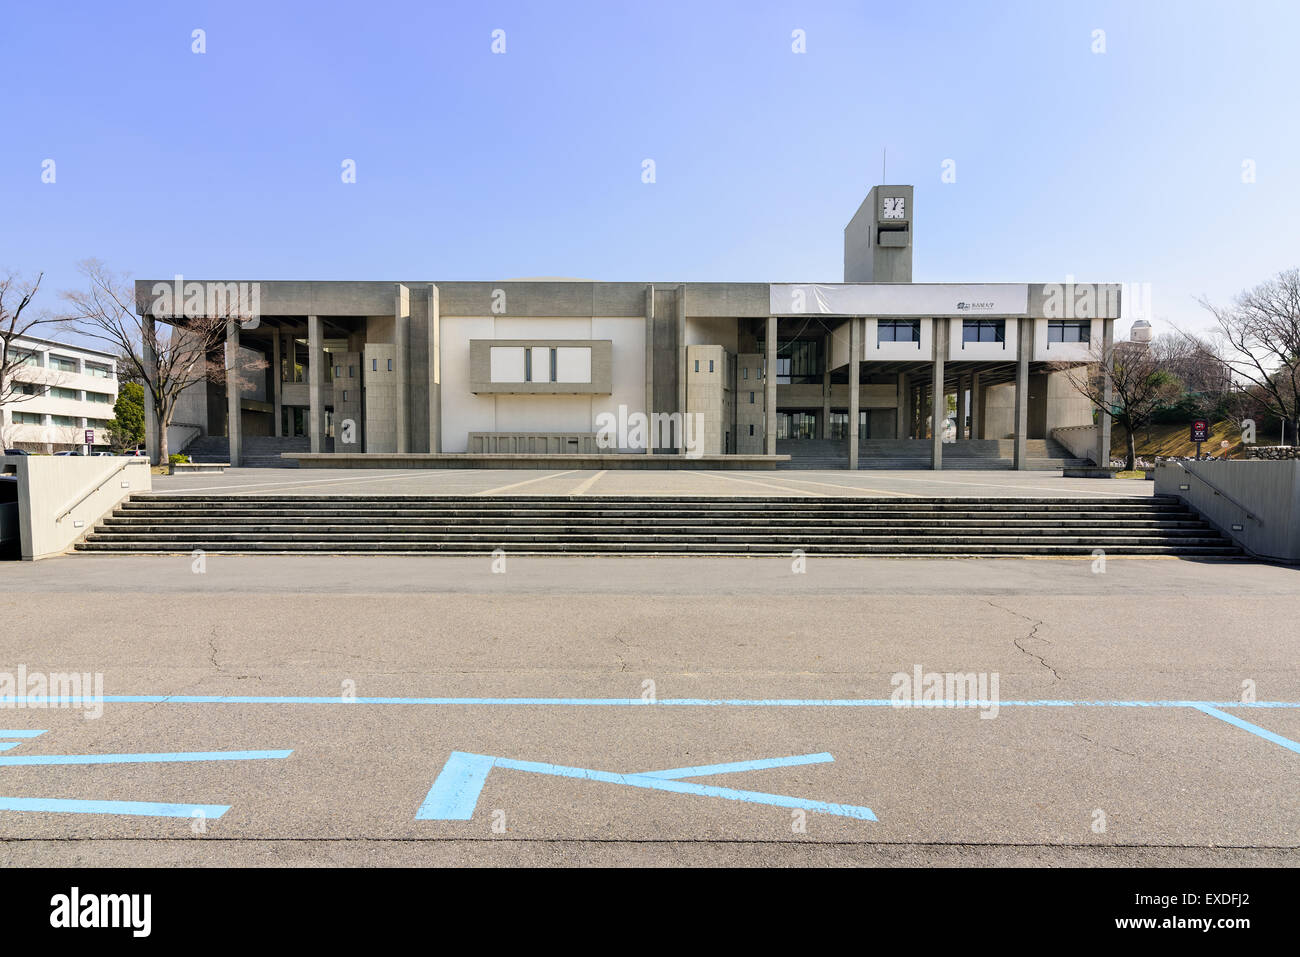 Brutalistische Architektur. Toyoda Auditorium an der Nagoya Universität in Japan. Stockfoto